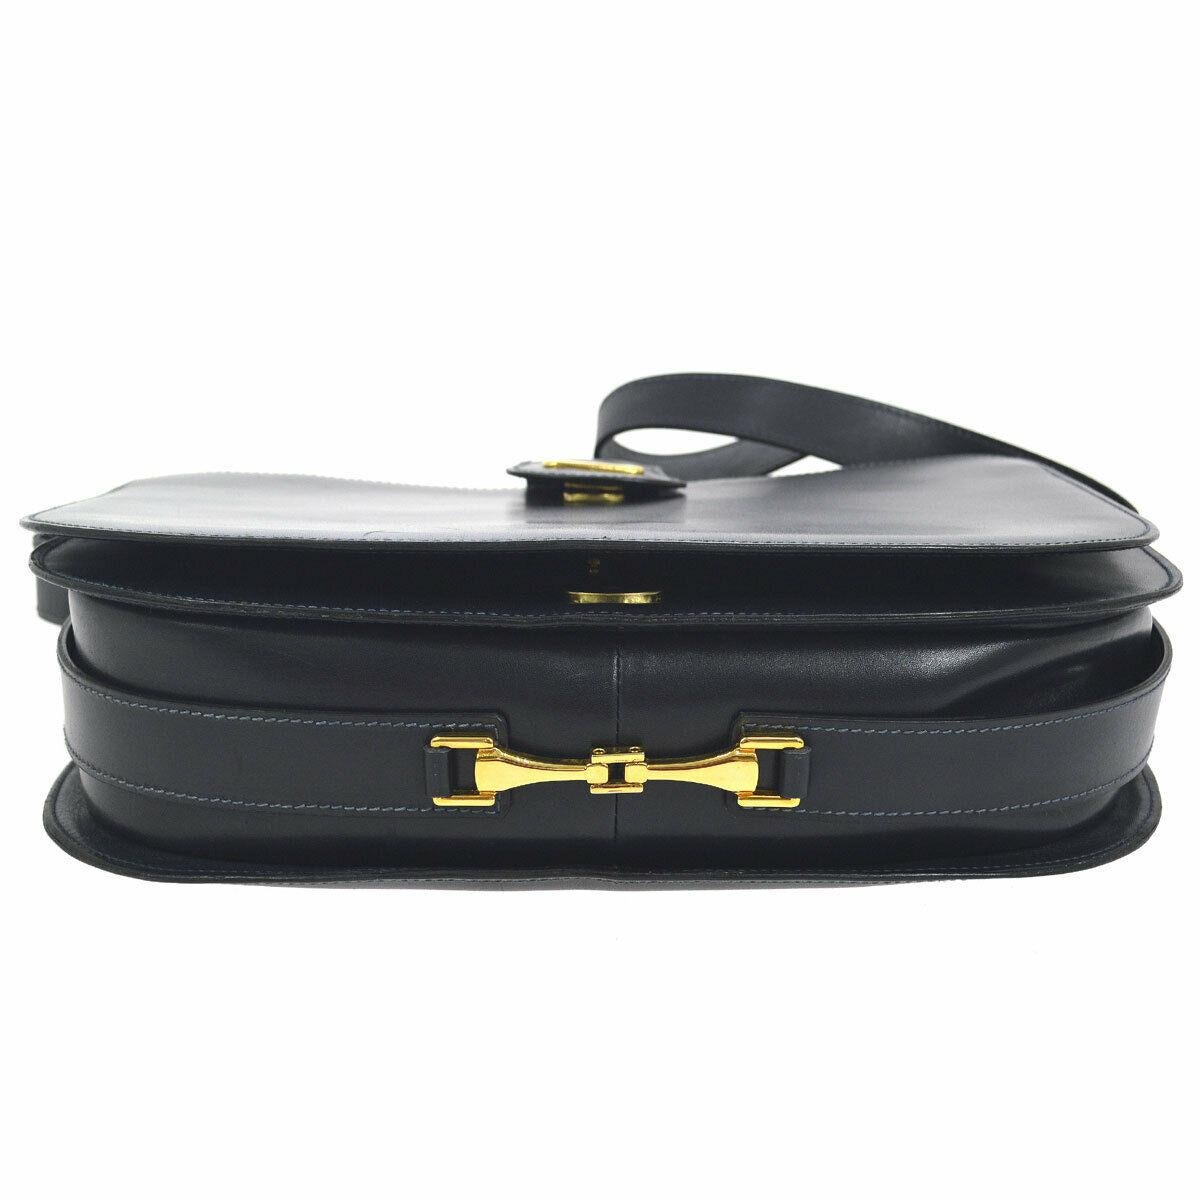 Celine Navy Leather Gold Horsebit Box Saddle Shoulder Flap Bag

Leather
Gold tone hardware
Leather lining
Made in Italy 
Adjustable shoulder strap drop 9.75-13.5